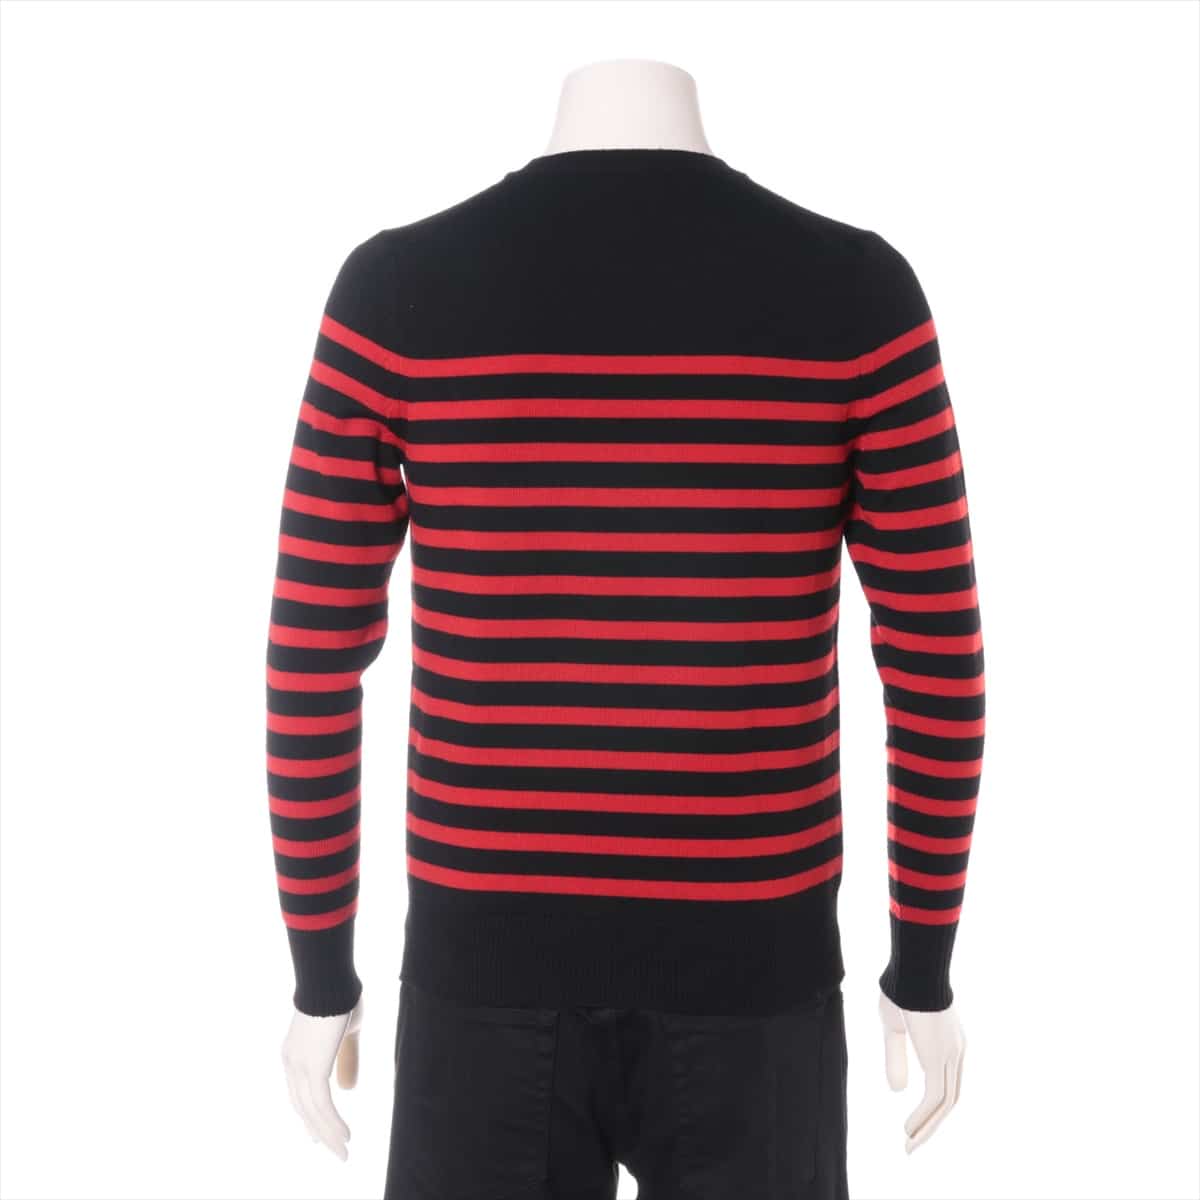 Saint Laurent Paris 17 years Wool Knit XS Men's Red x Black  459986